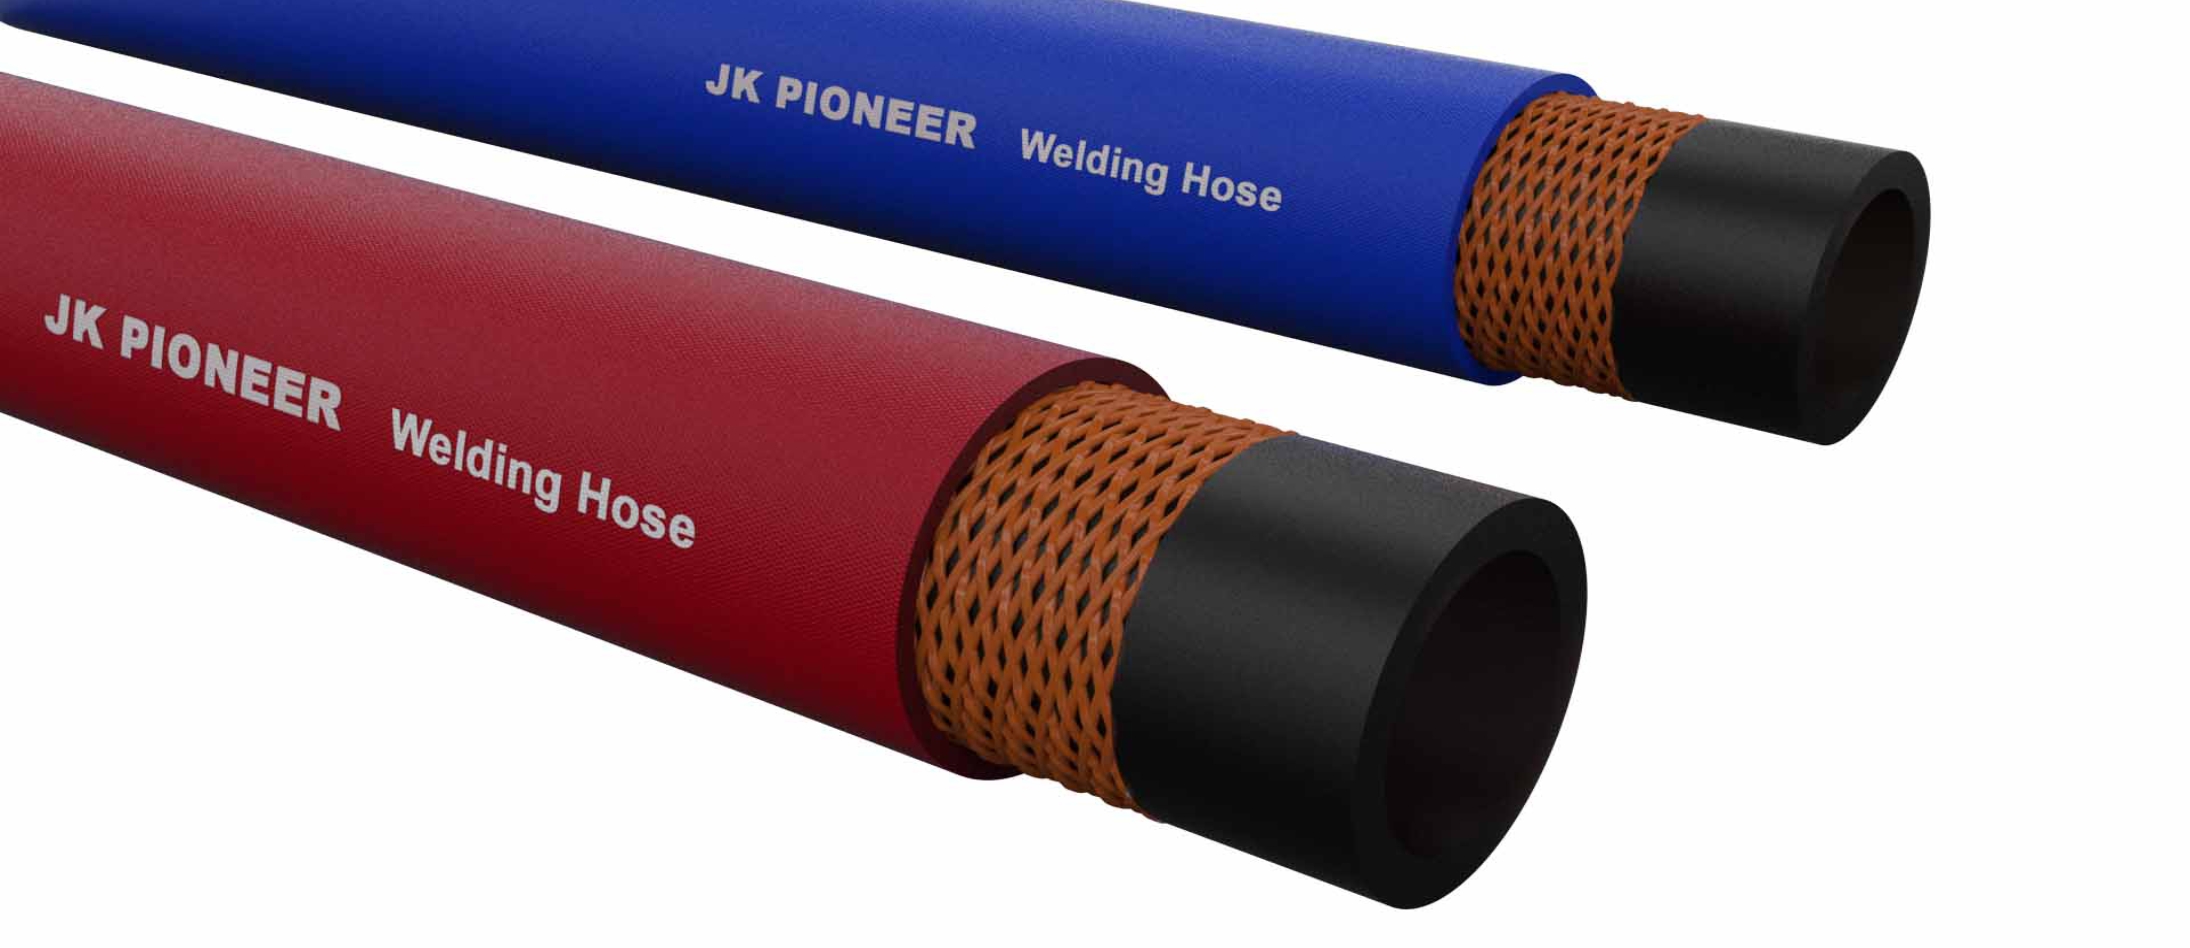 JK pioneer welding hose distributor in Kolkata